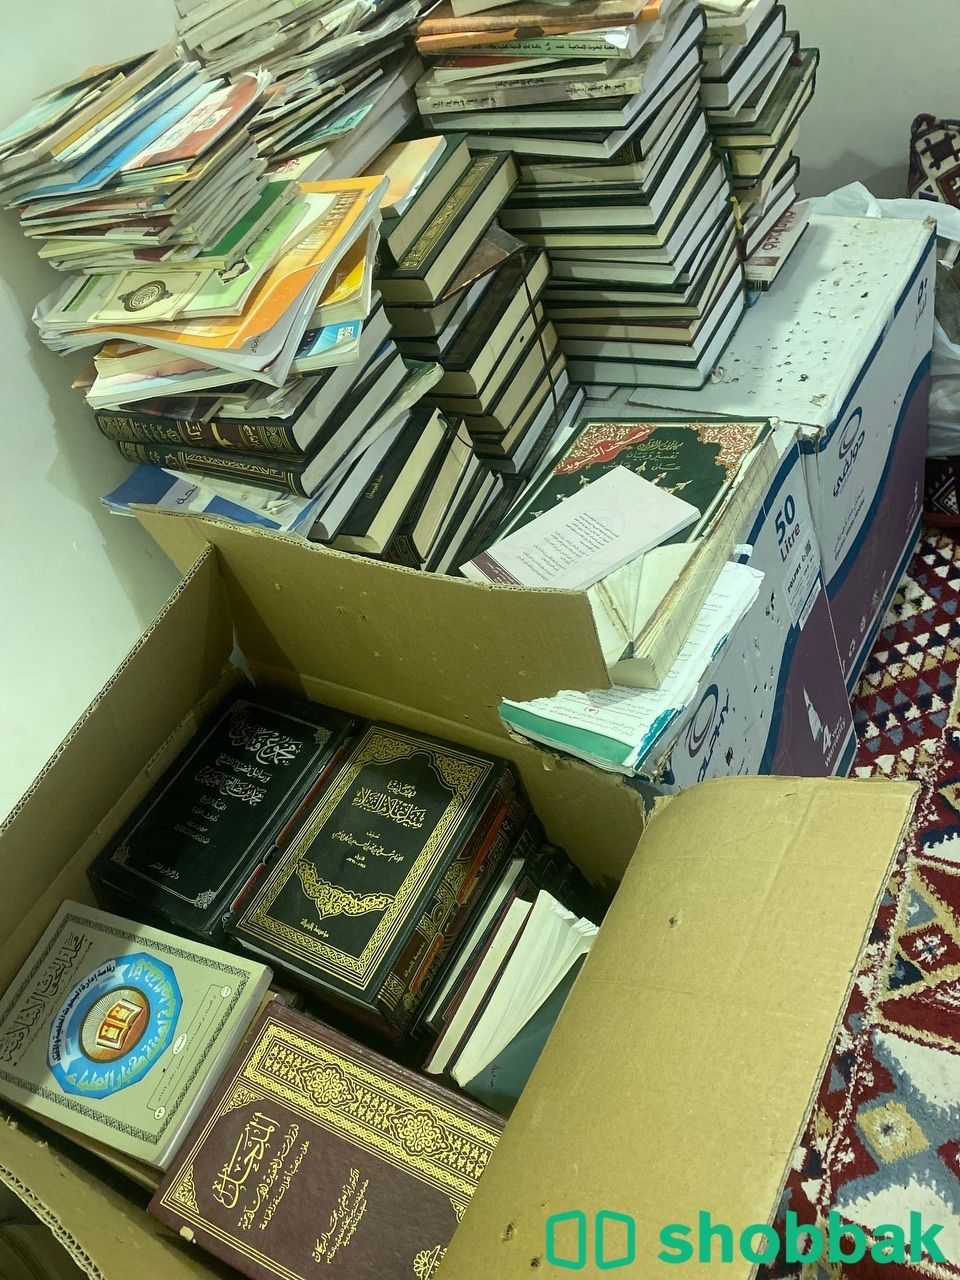 بيع كتب  Shobbak Saudi Arabia